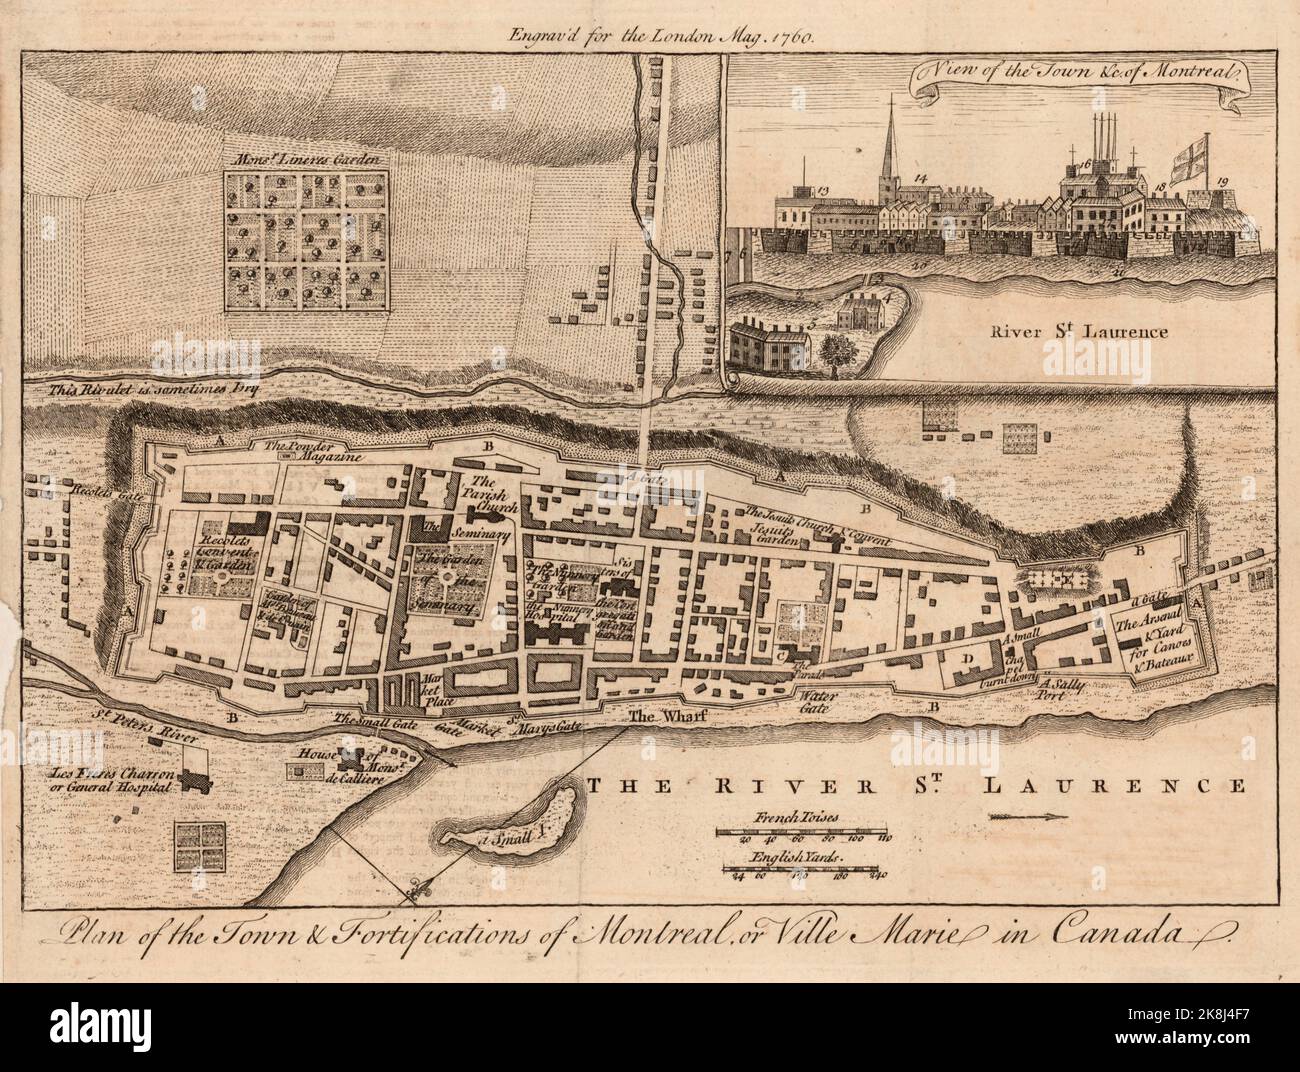 Piano della città & fortificazioni di Montreal, o Ville Marie nella provincia di Quebec, Canada ca. 1760 Foto Stock